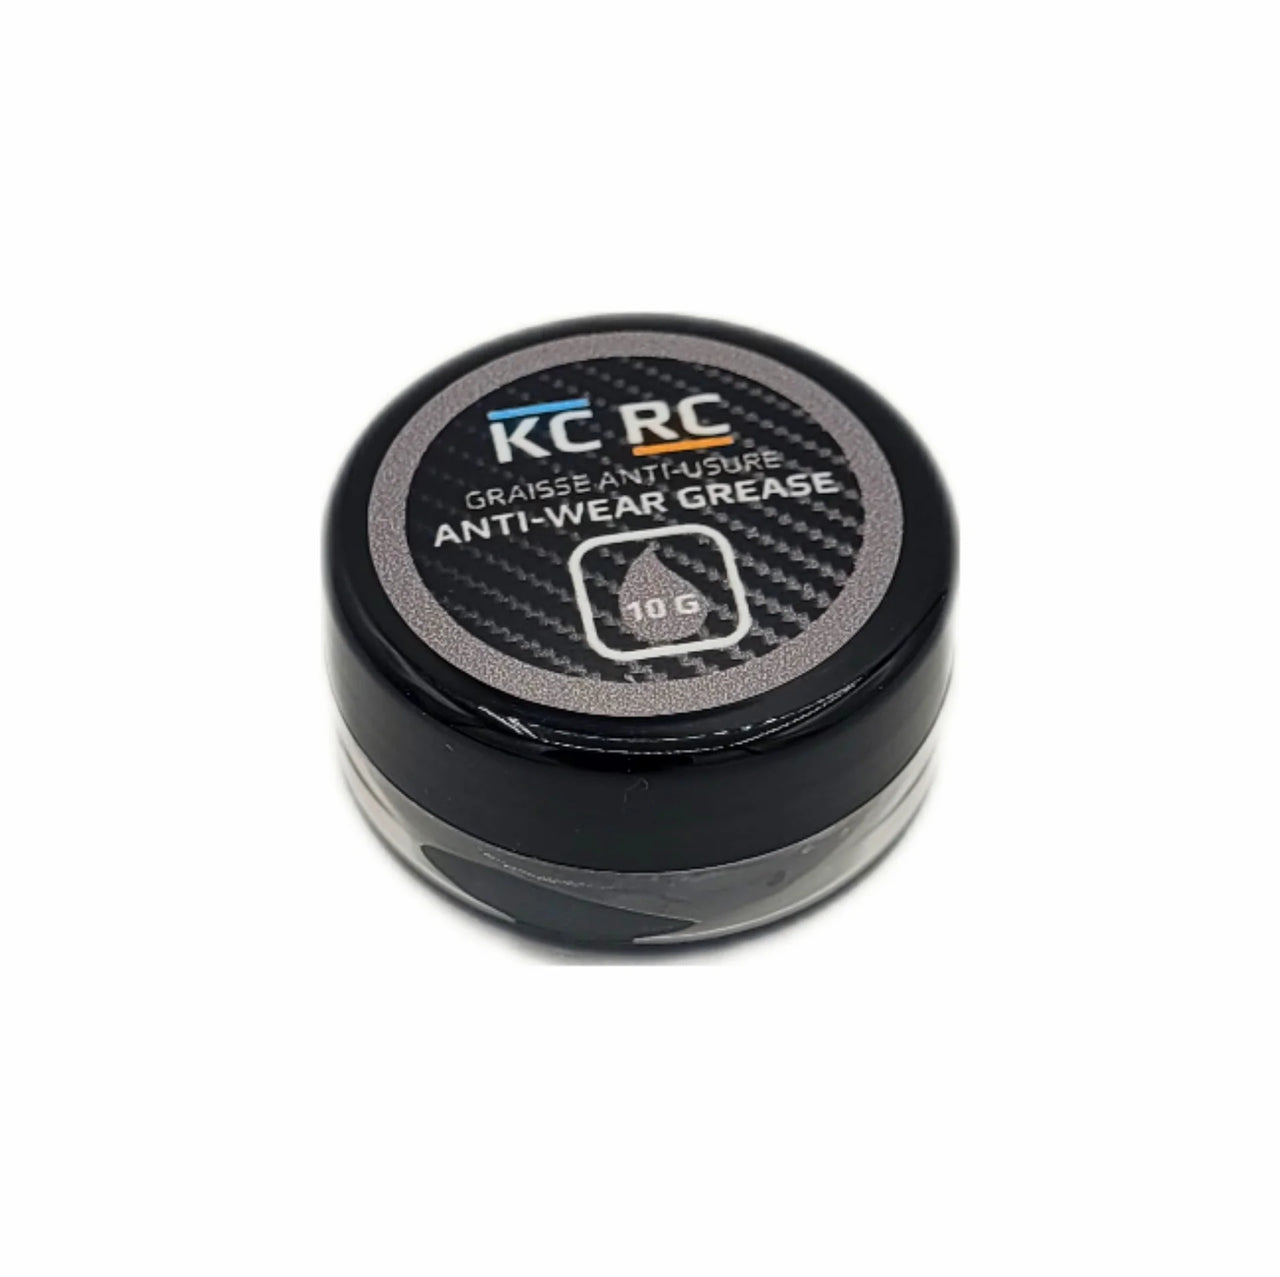 AGAWG10G KC RC Anti-Wear Grease (10G)